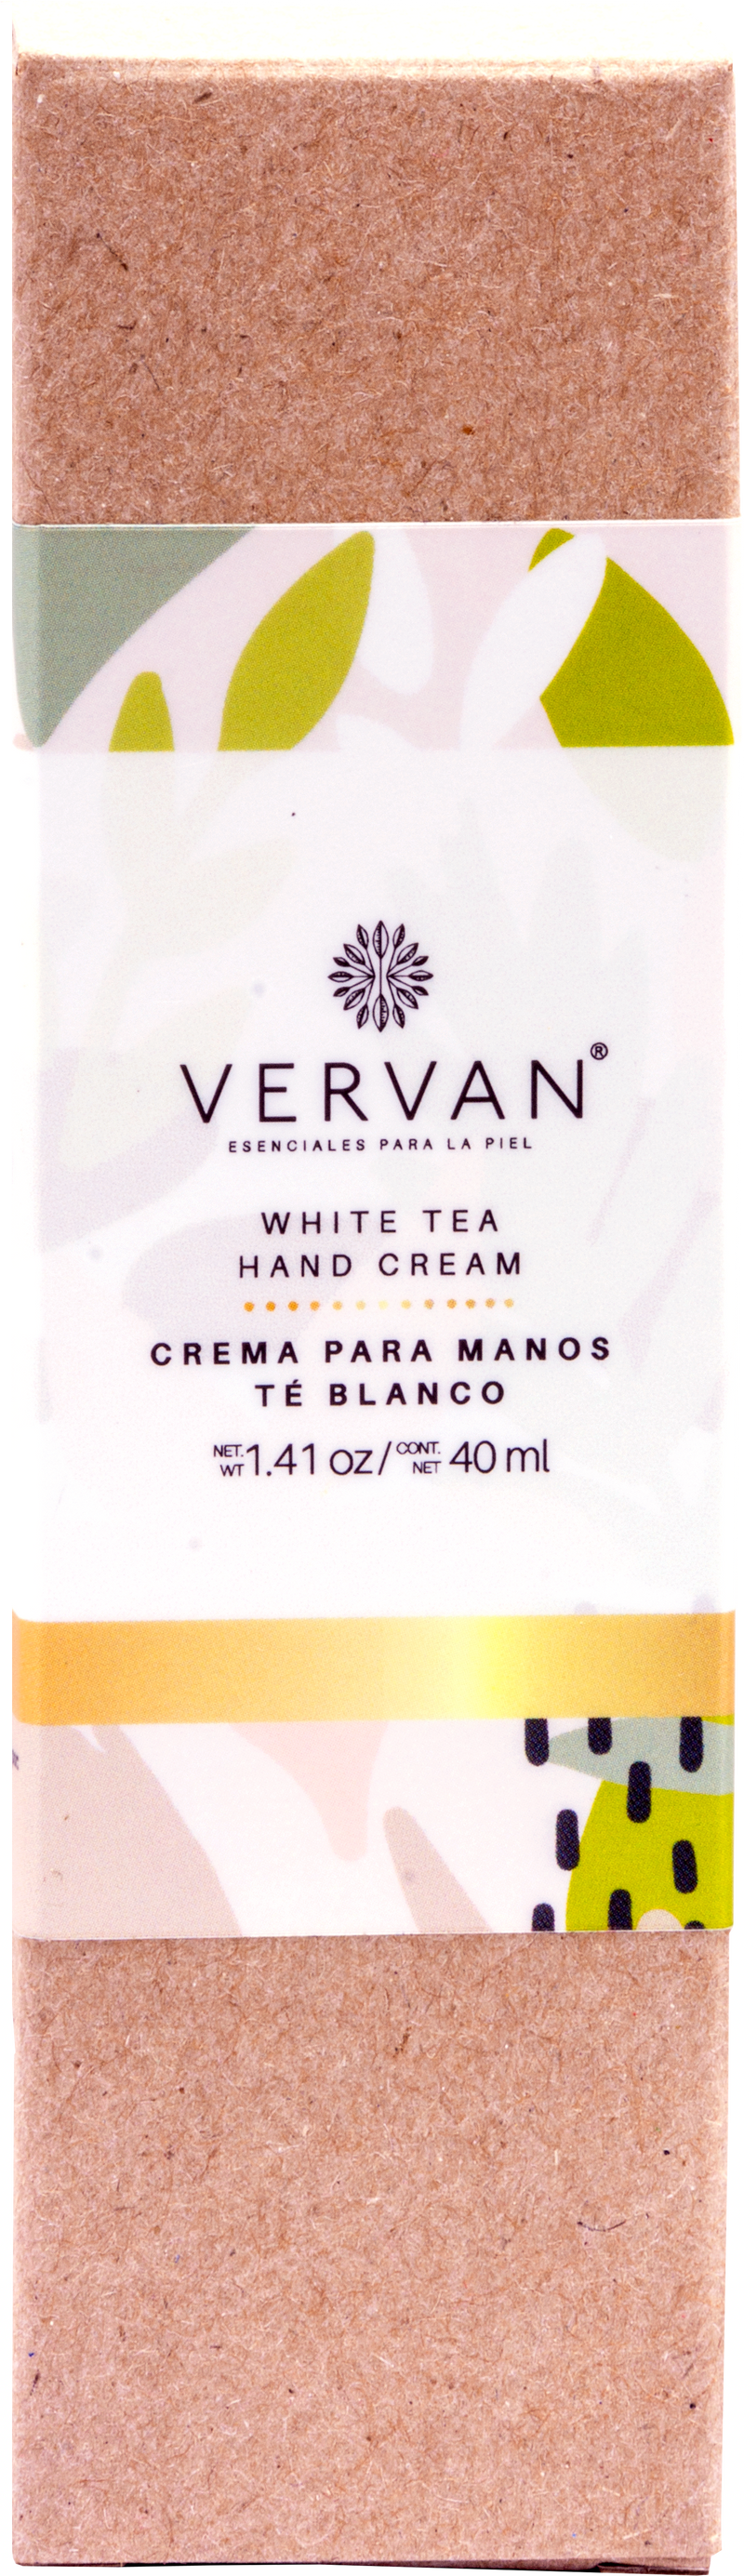 Crema para manos  - Té Blanco